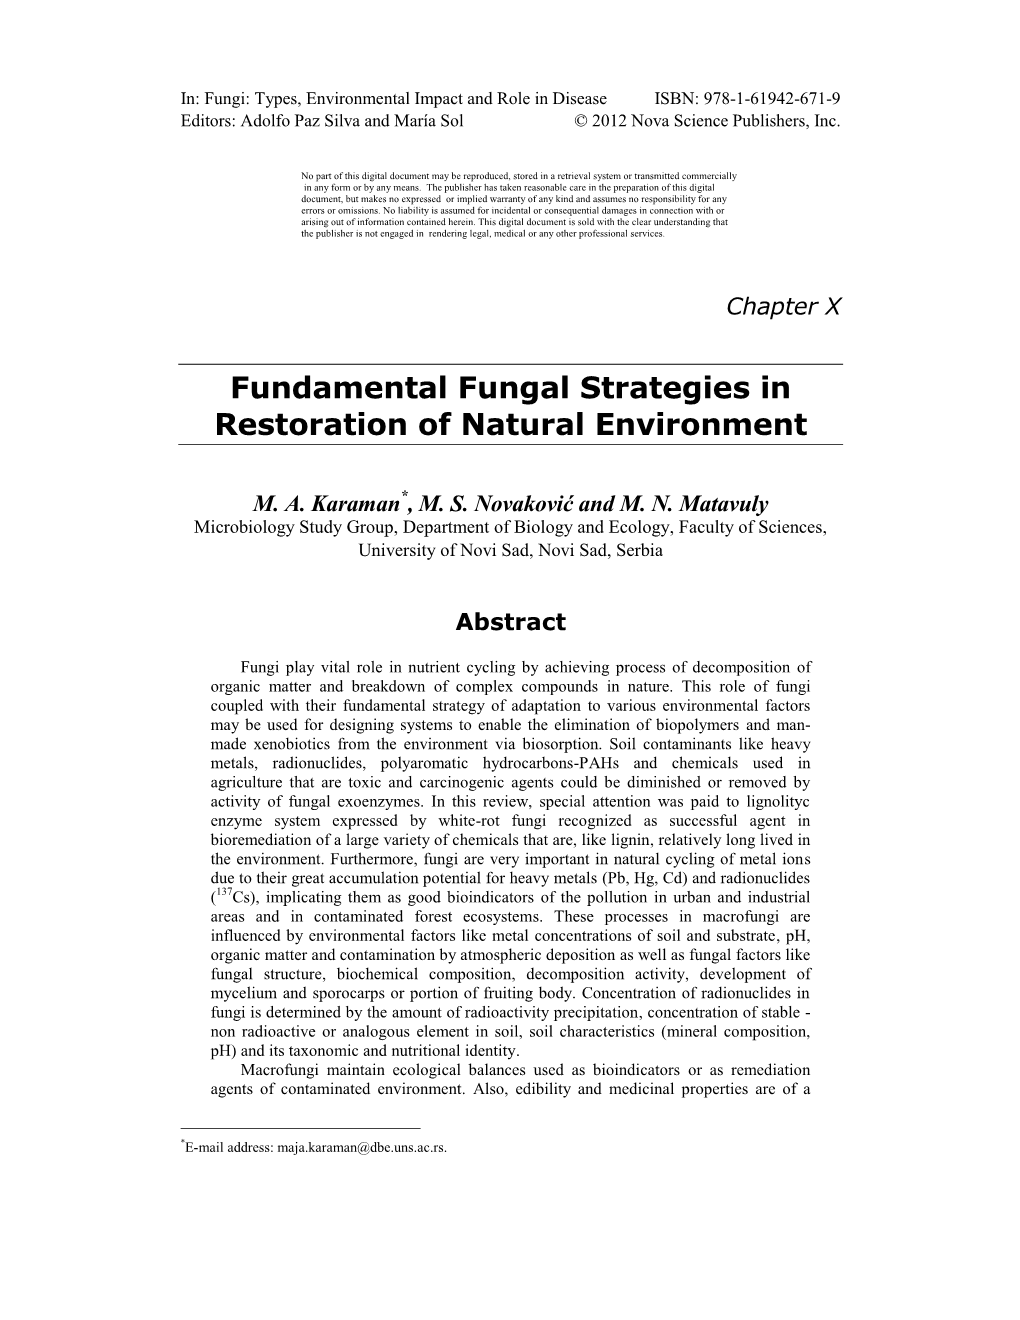 Fundamental Fungal Strategies in Restoration of Natural Environment